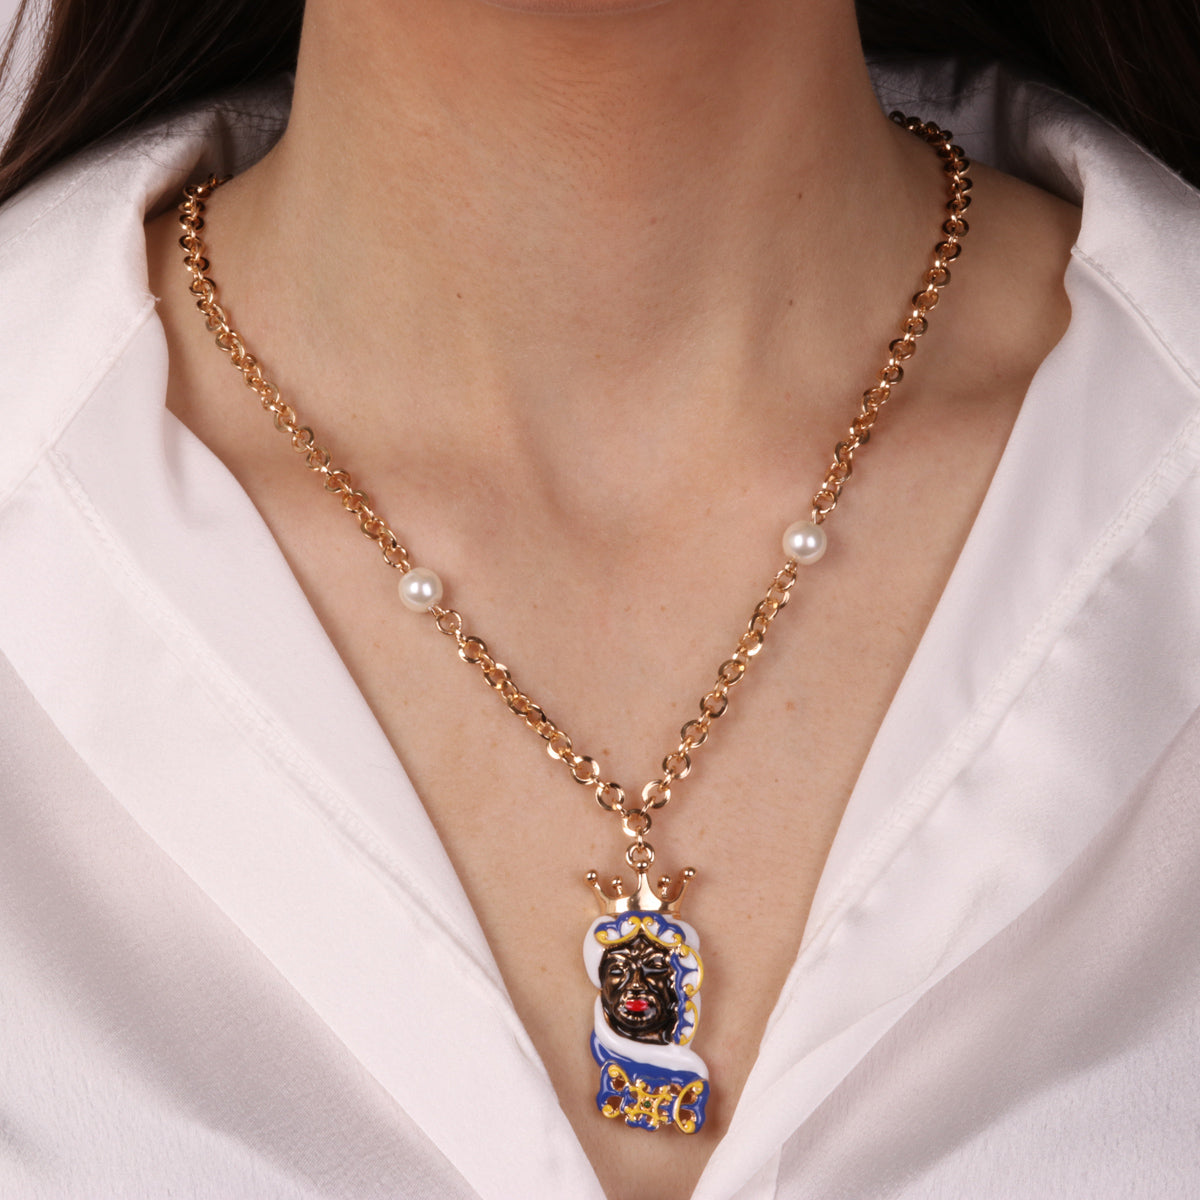 Metal necklace with Sicilian dark -headed head